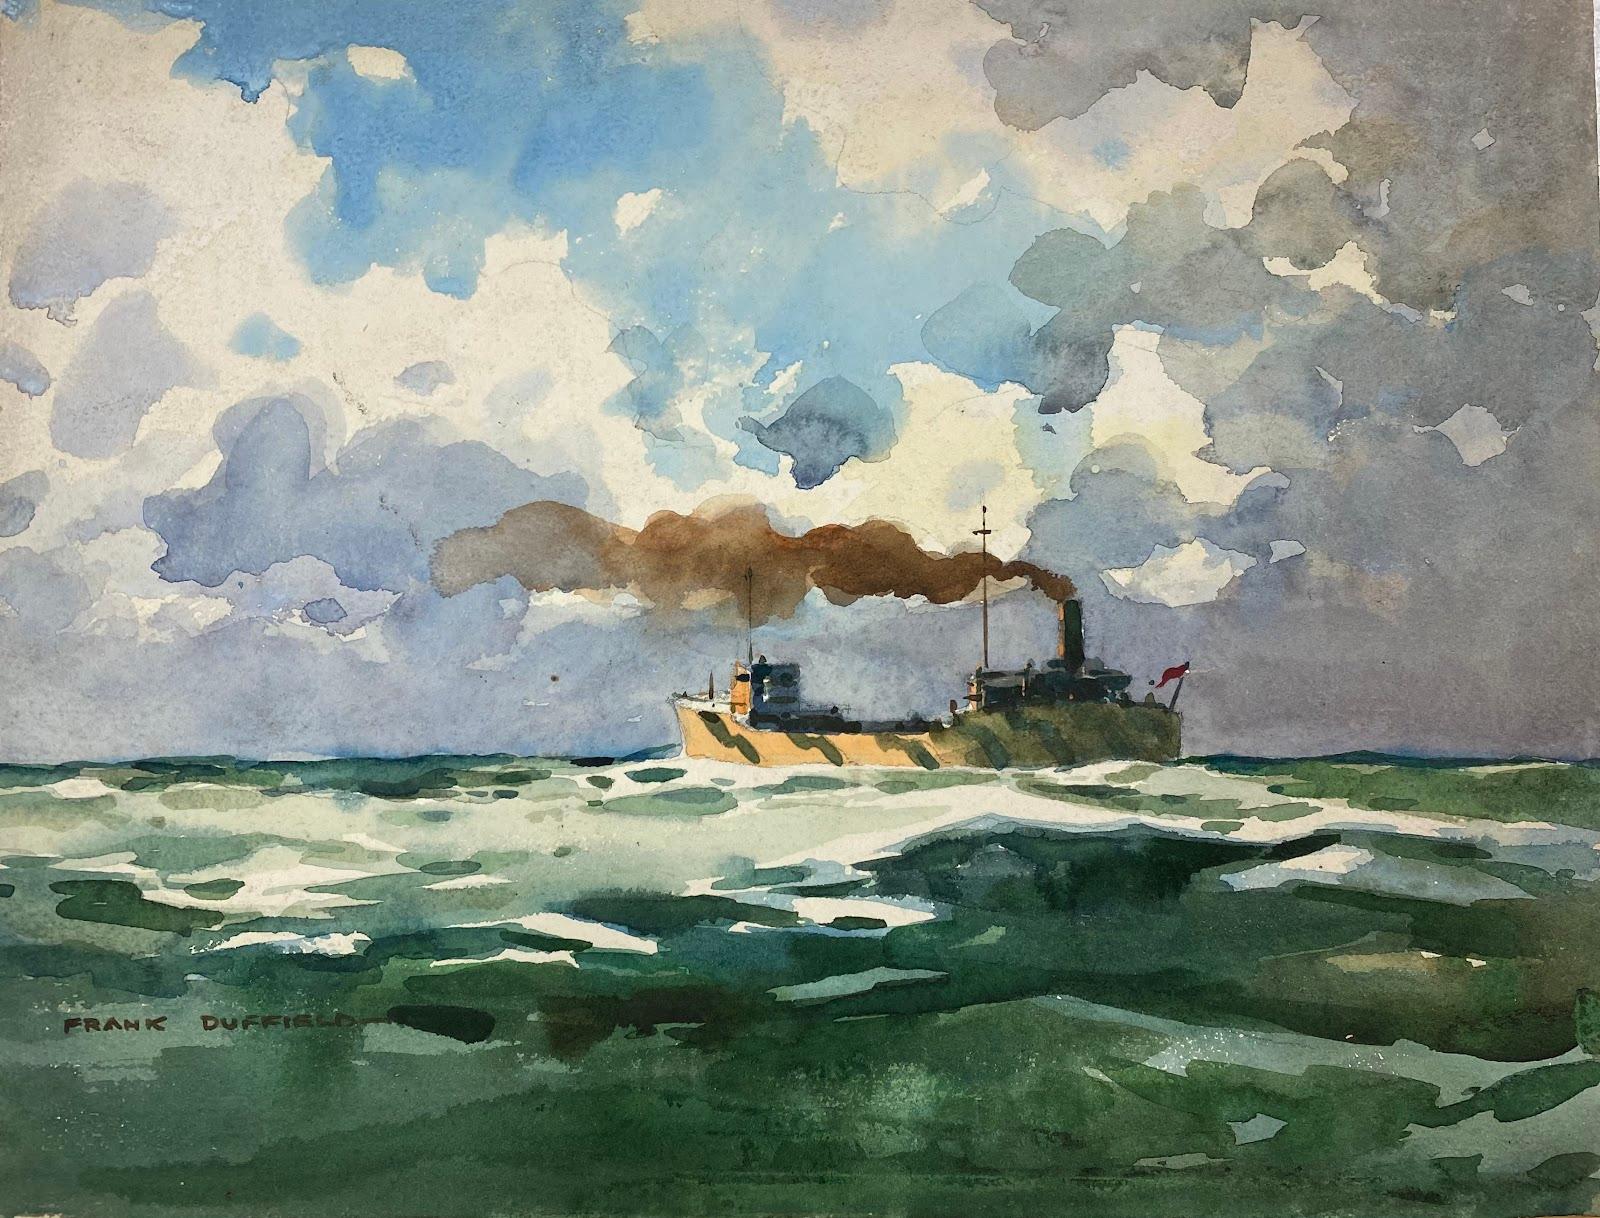 Frank Duffield Landscape Art – Britisch-impressionistische Gemälde Brücke hinter einem Fischenboot 